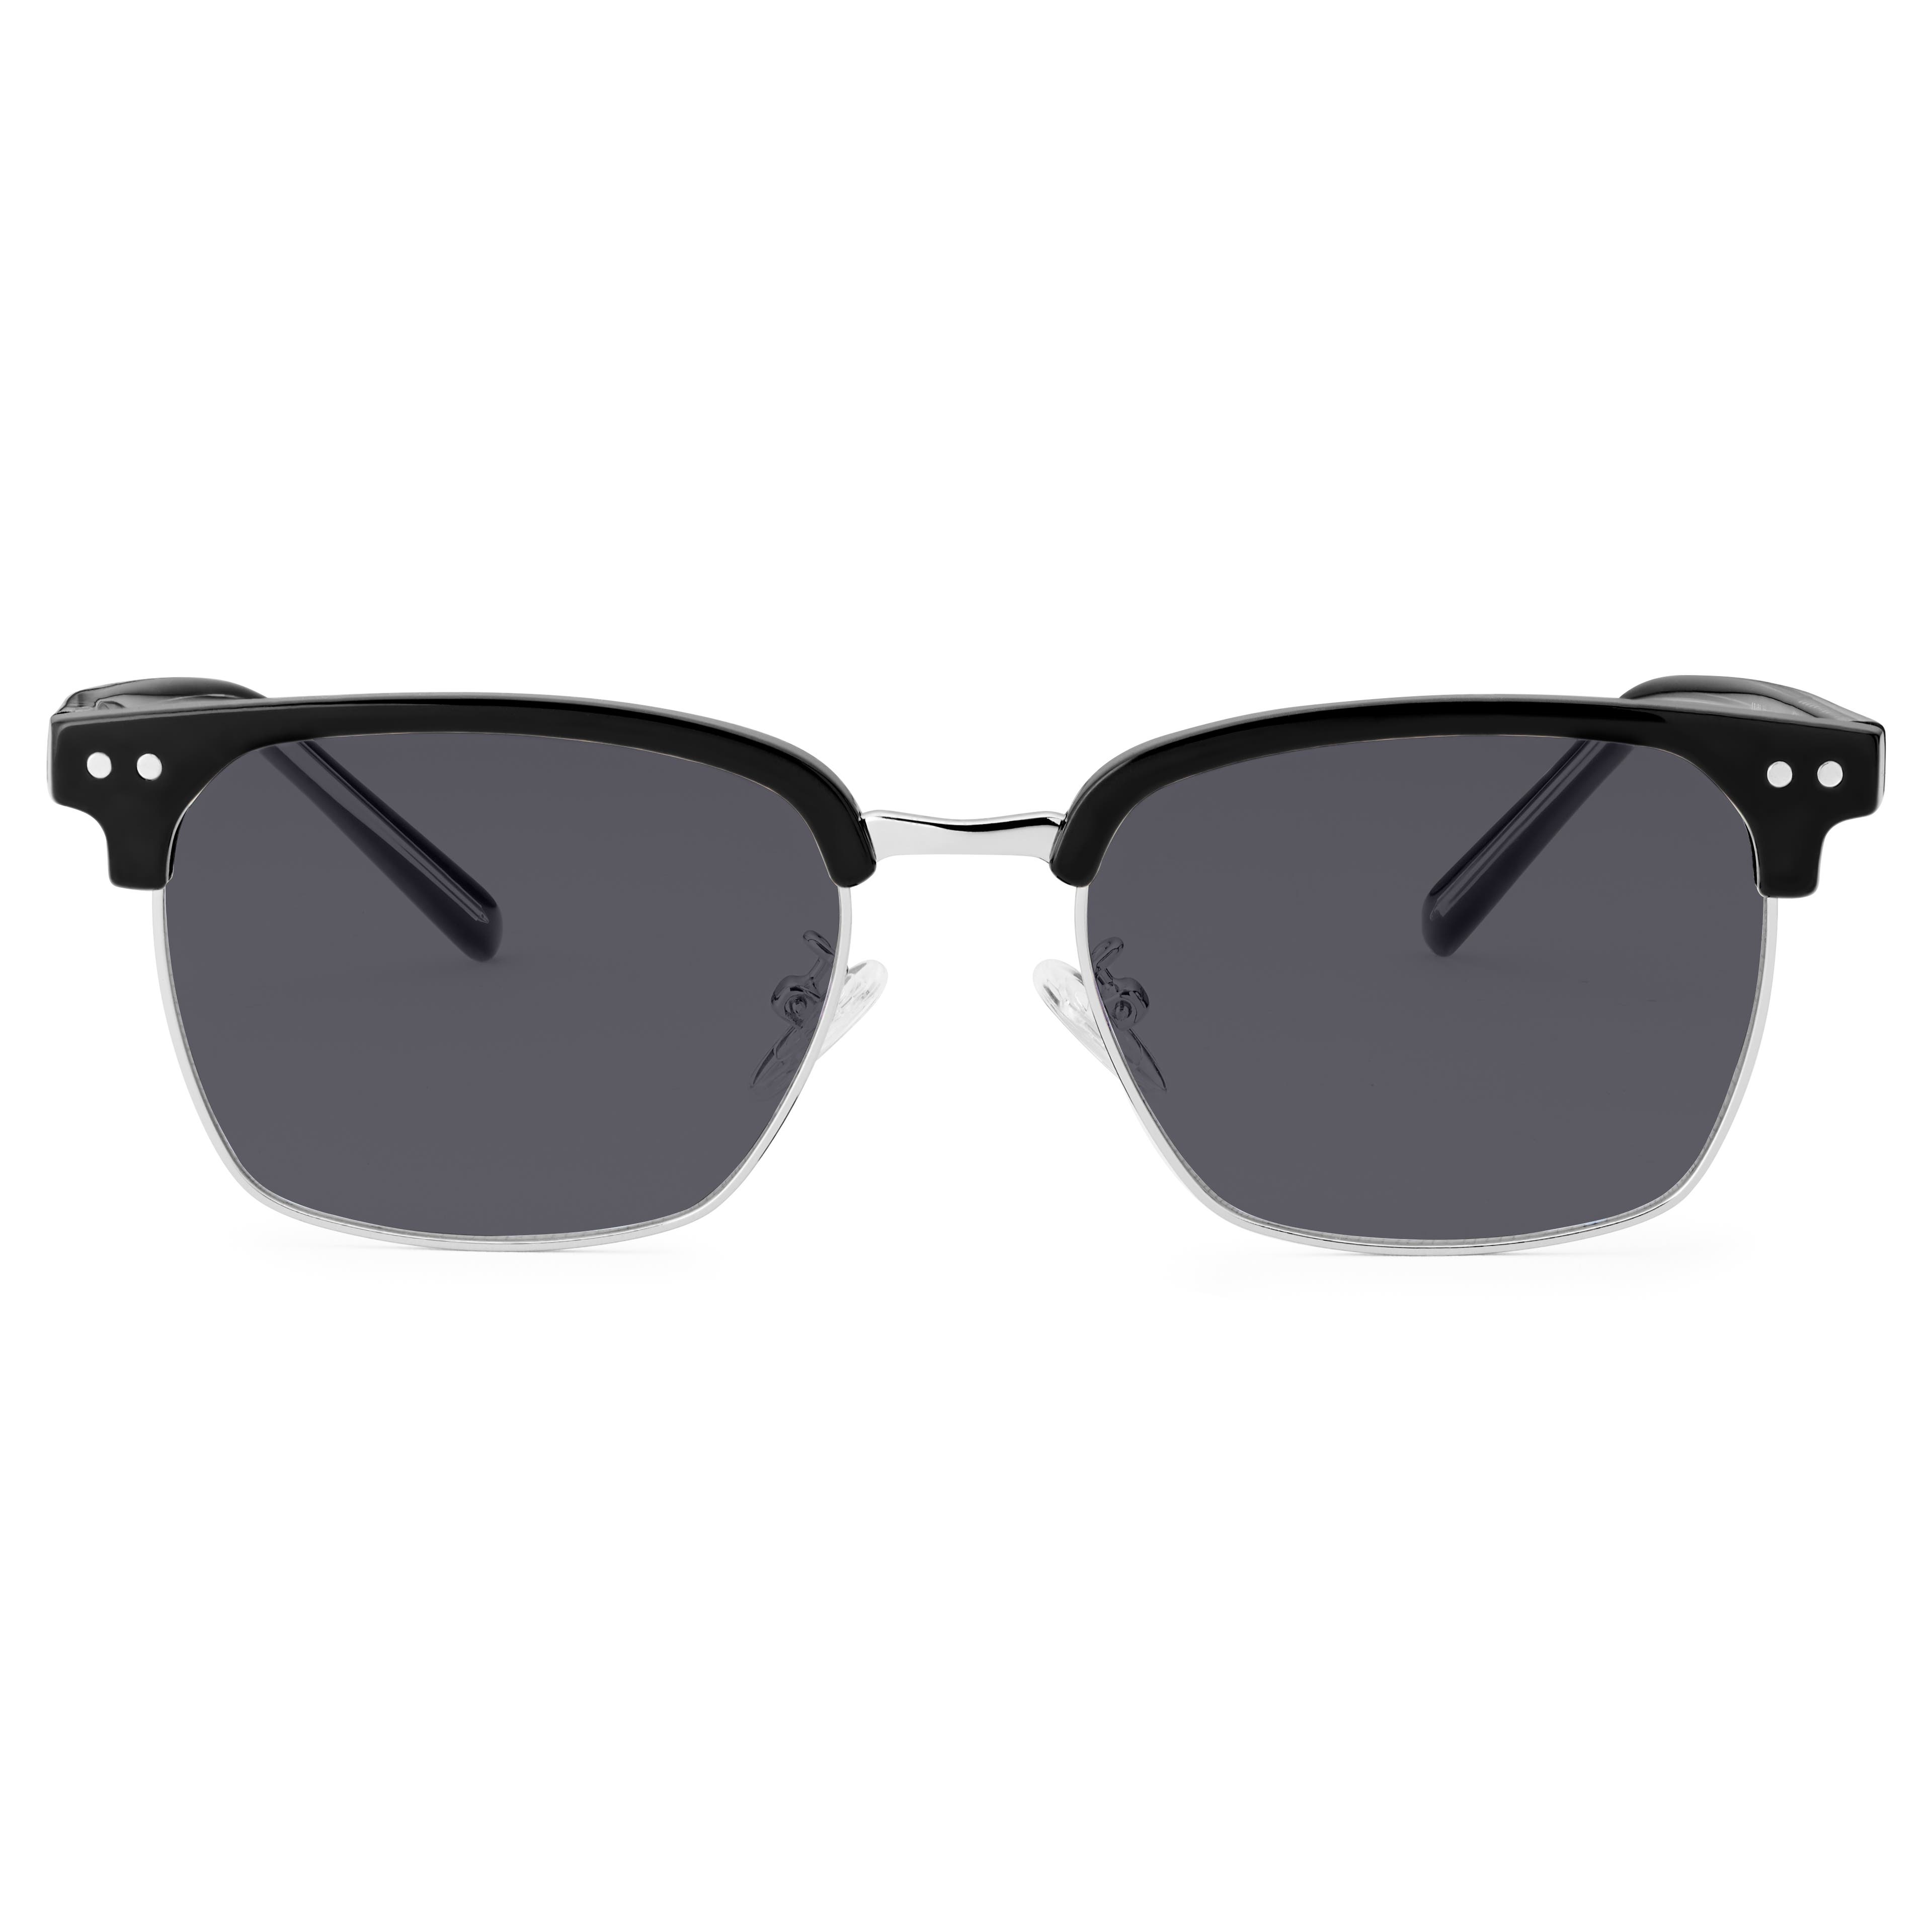 Black & Lead Stainless Steel Polarised Sunglasses